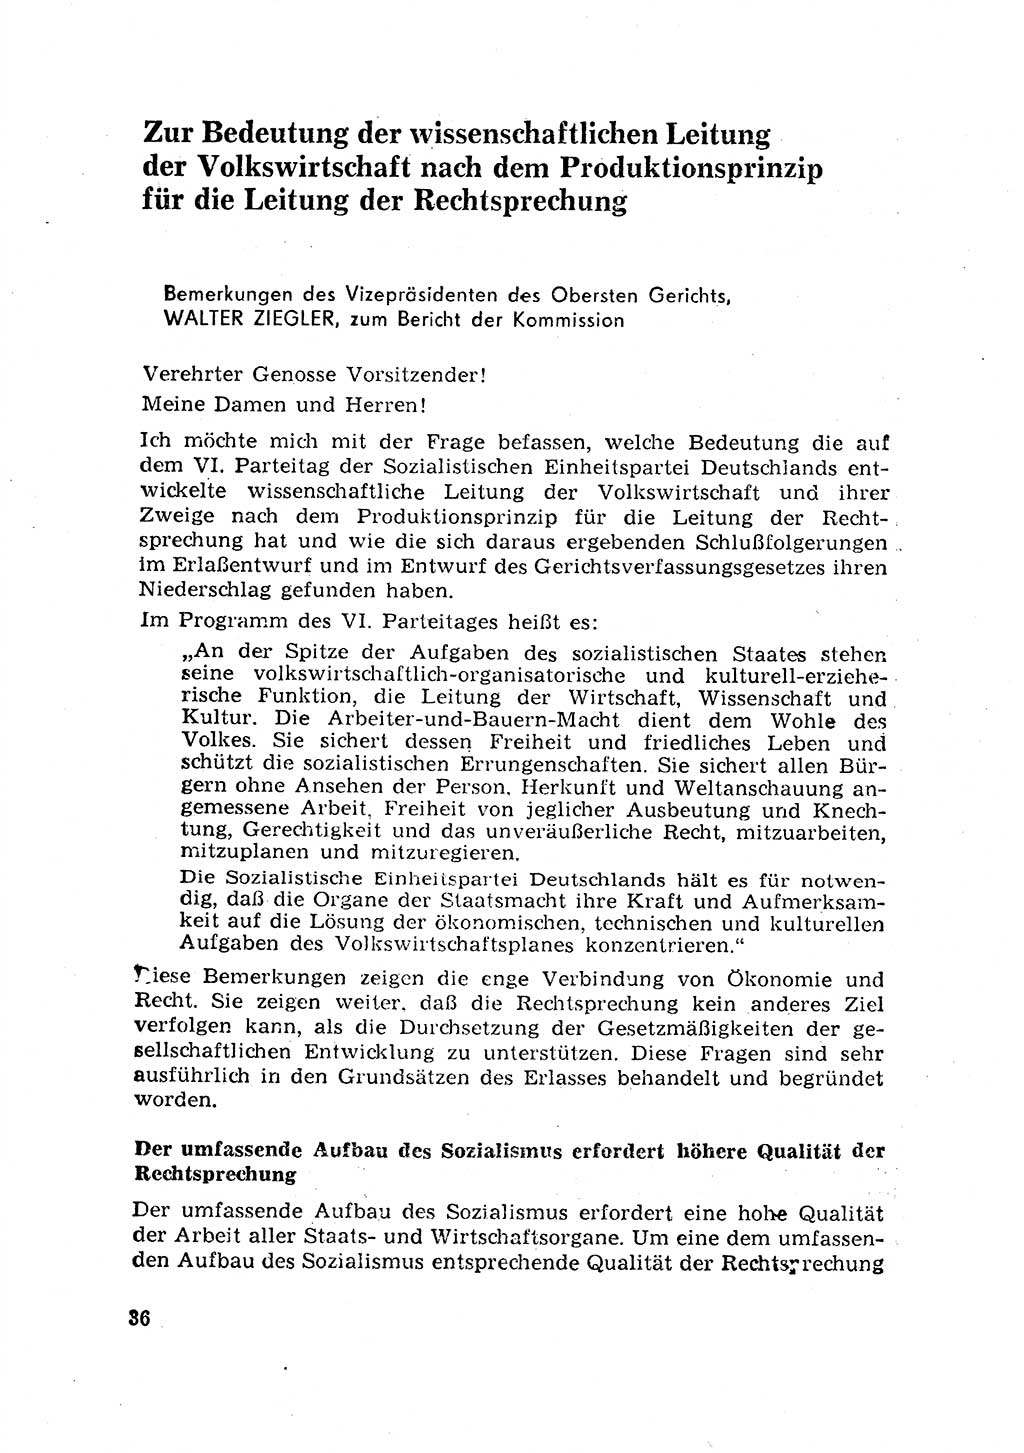 Rechtspflegeerlaß [Deutsche Demokratische Republik (DDR)] 1963, Seite 36 (R.-Pfl.-Erl. DDR 1963, S. 36)